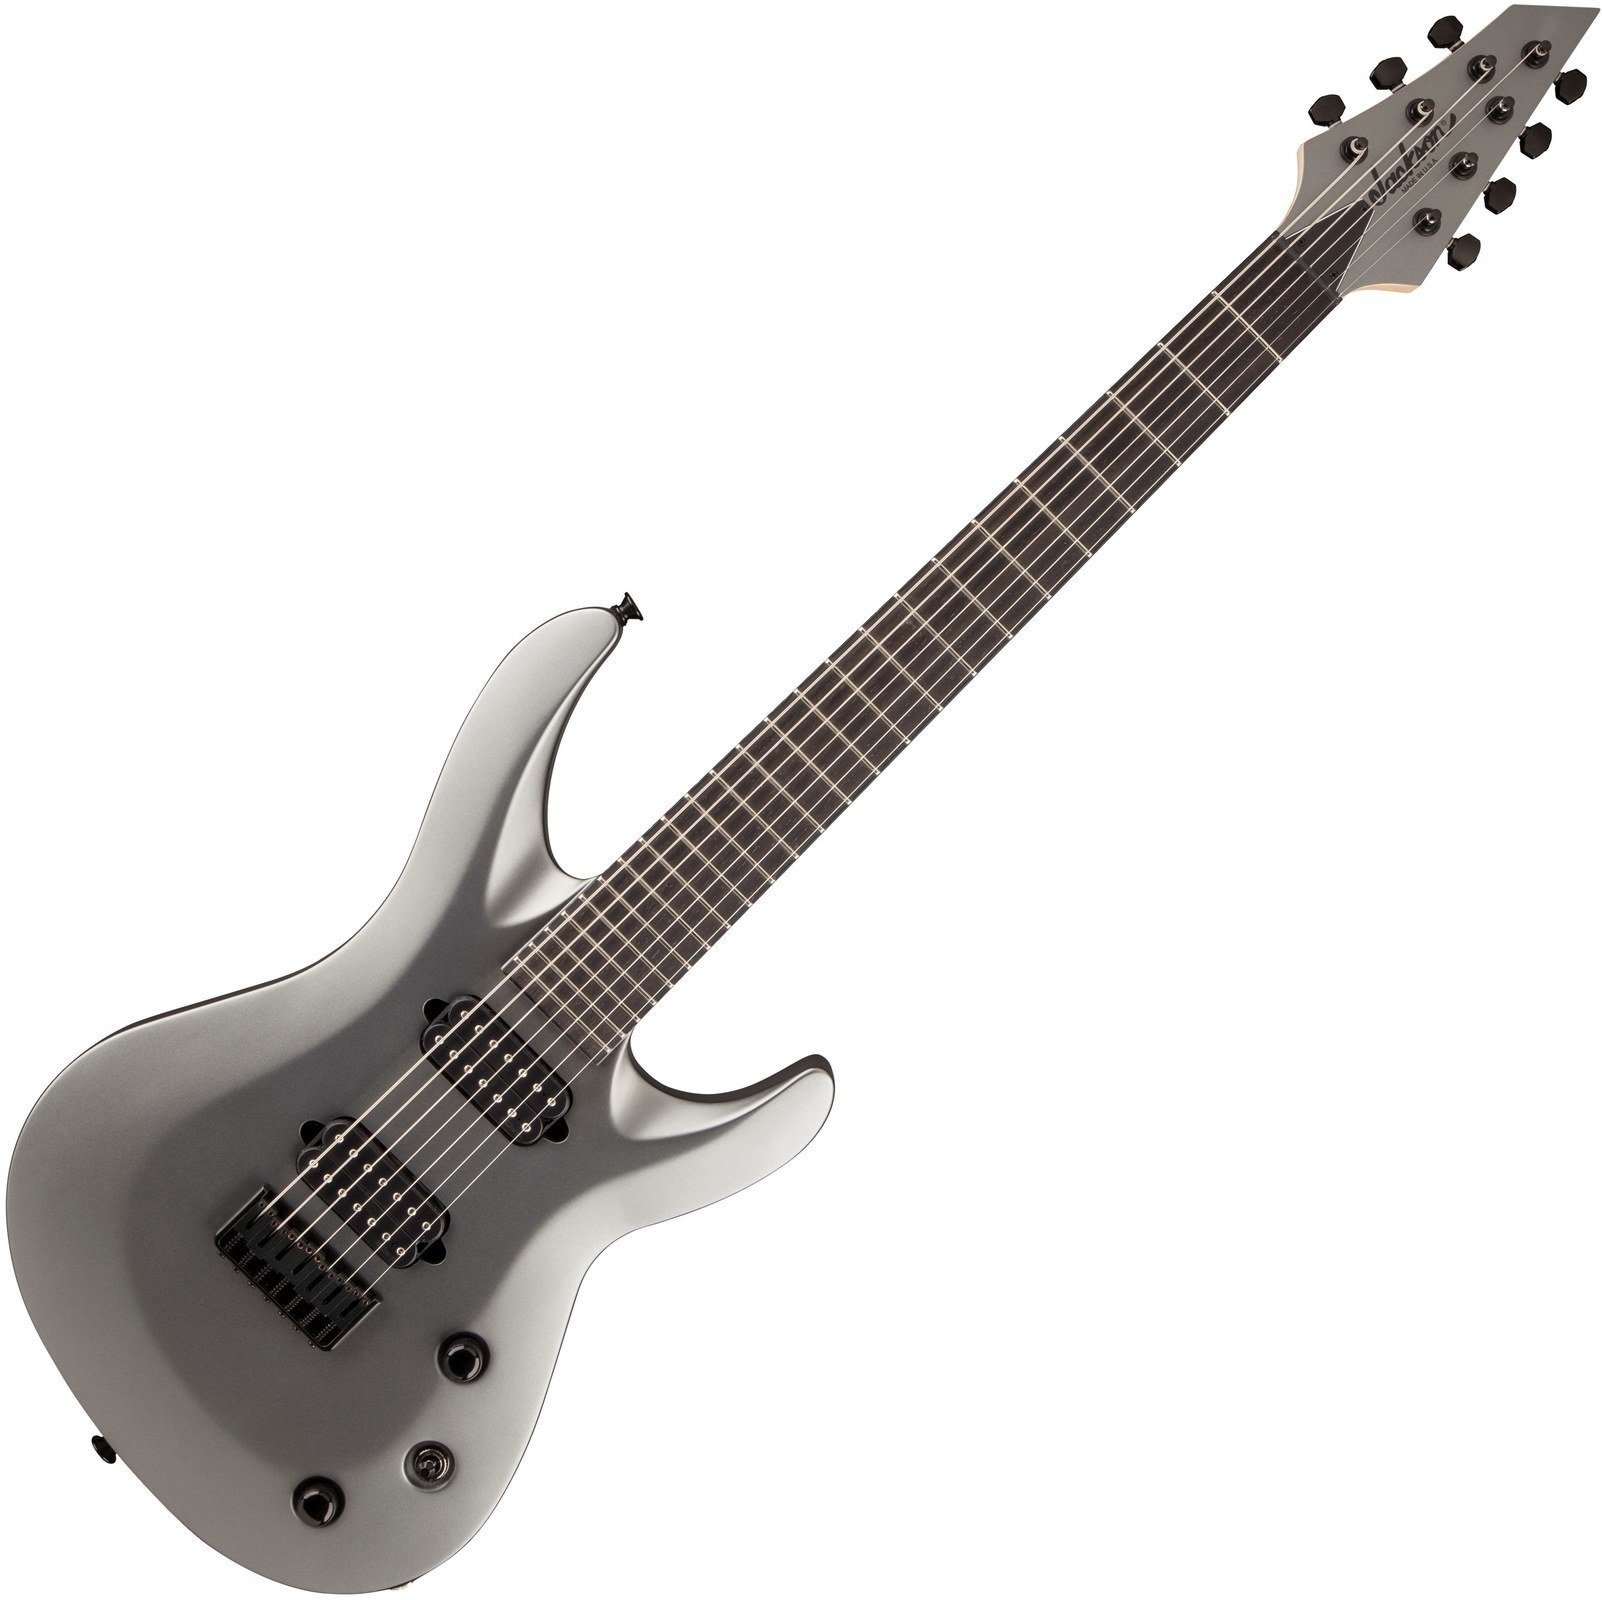 E-Gitarre Jackson USA Select B7MG Deluxe Satin Gray with Case